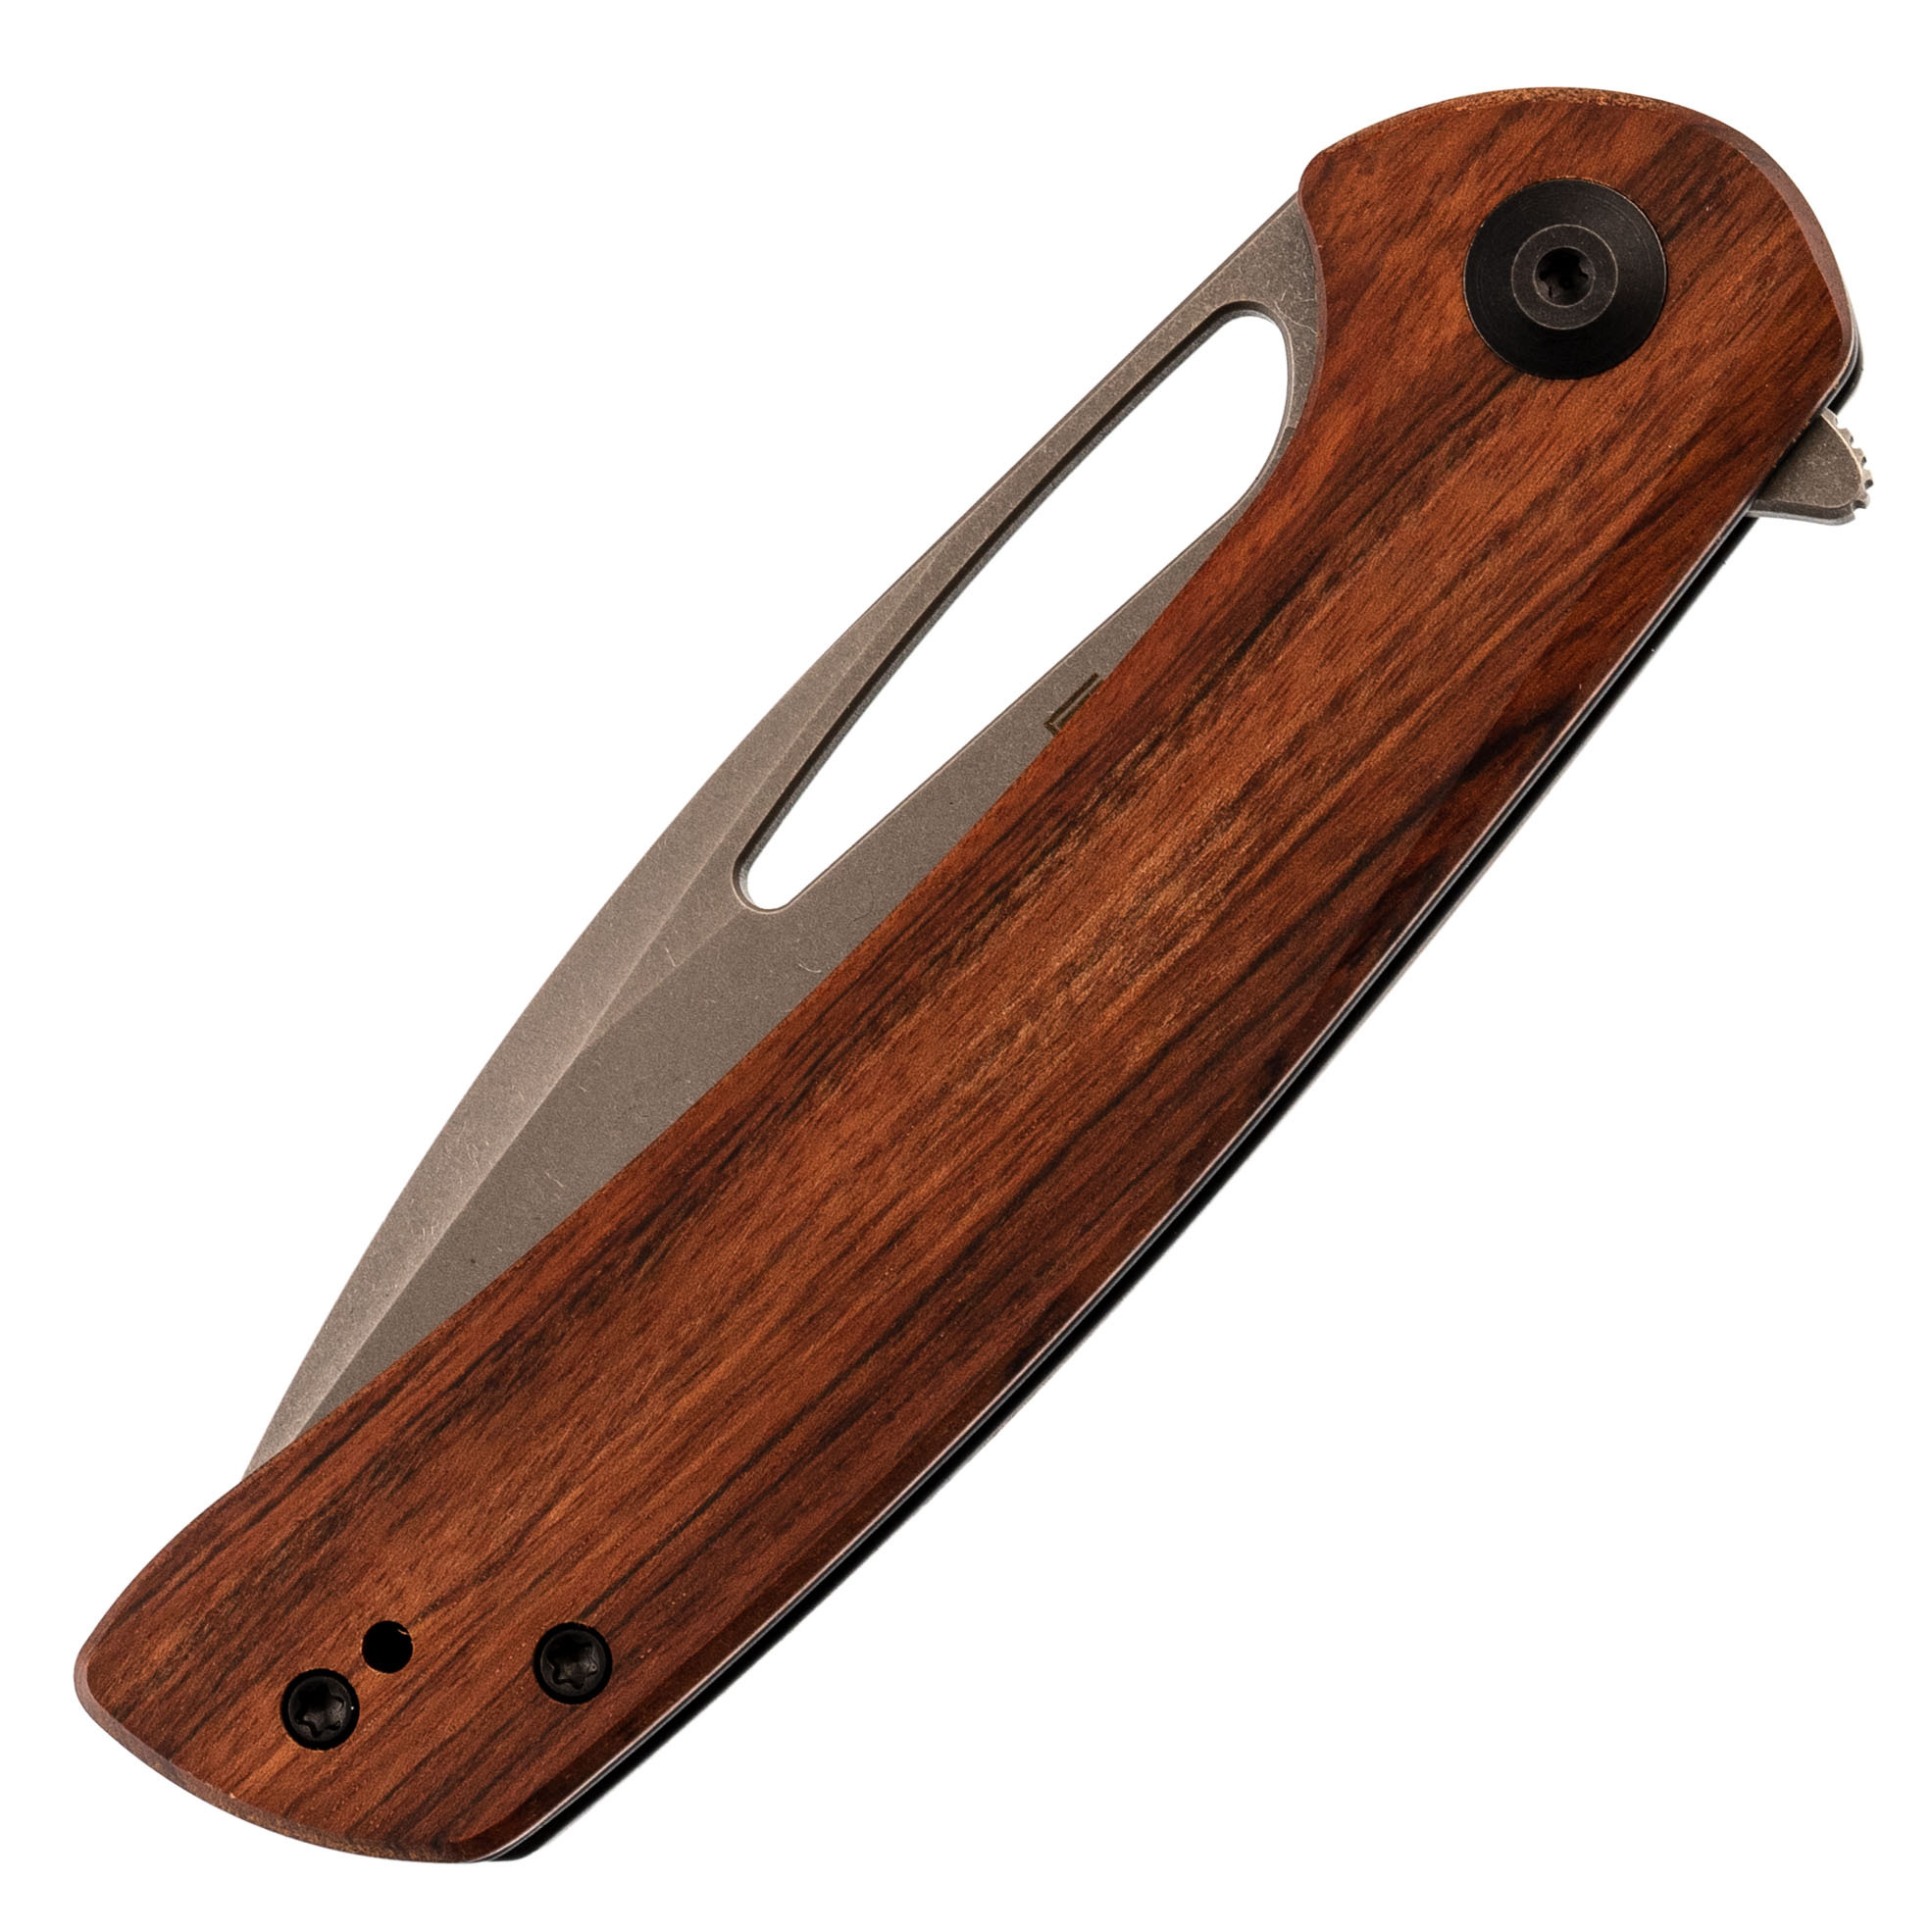 Складной нож Sencut Honoris Stonewash, сталь 9Cr18MoV, рукоять cuibourtia wood - фото 7